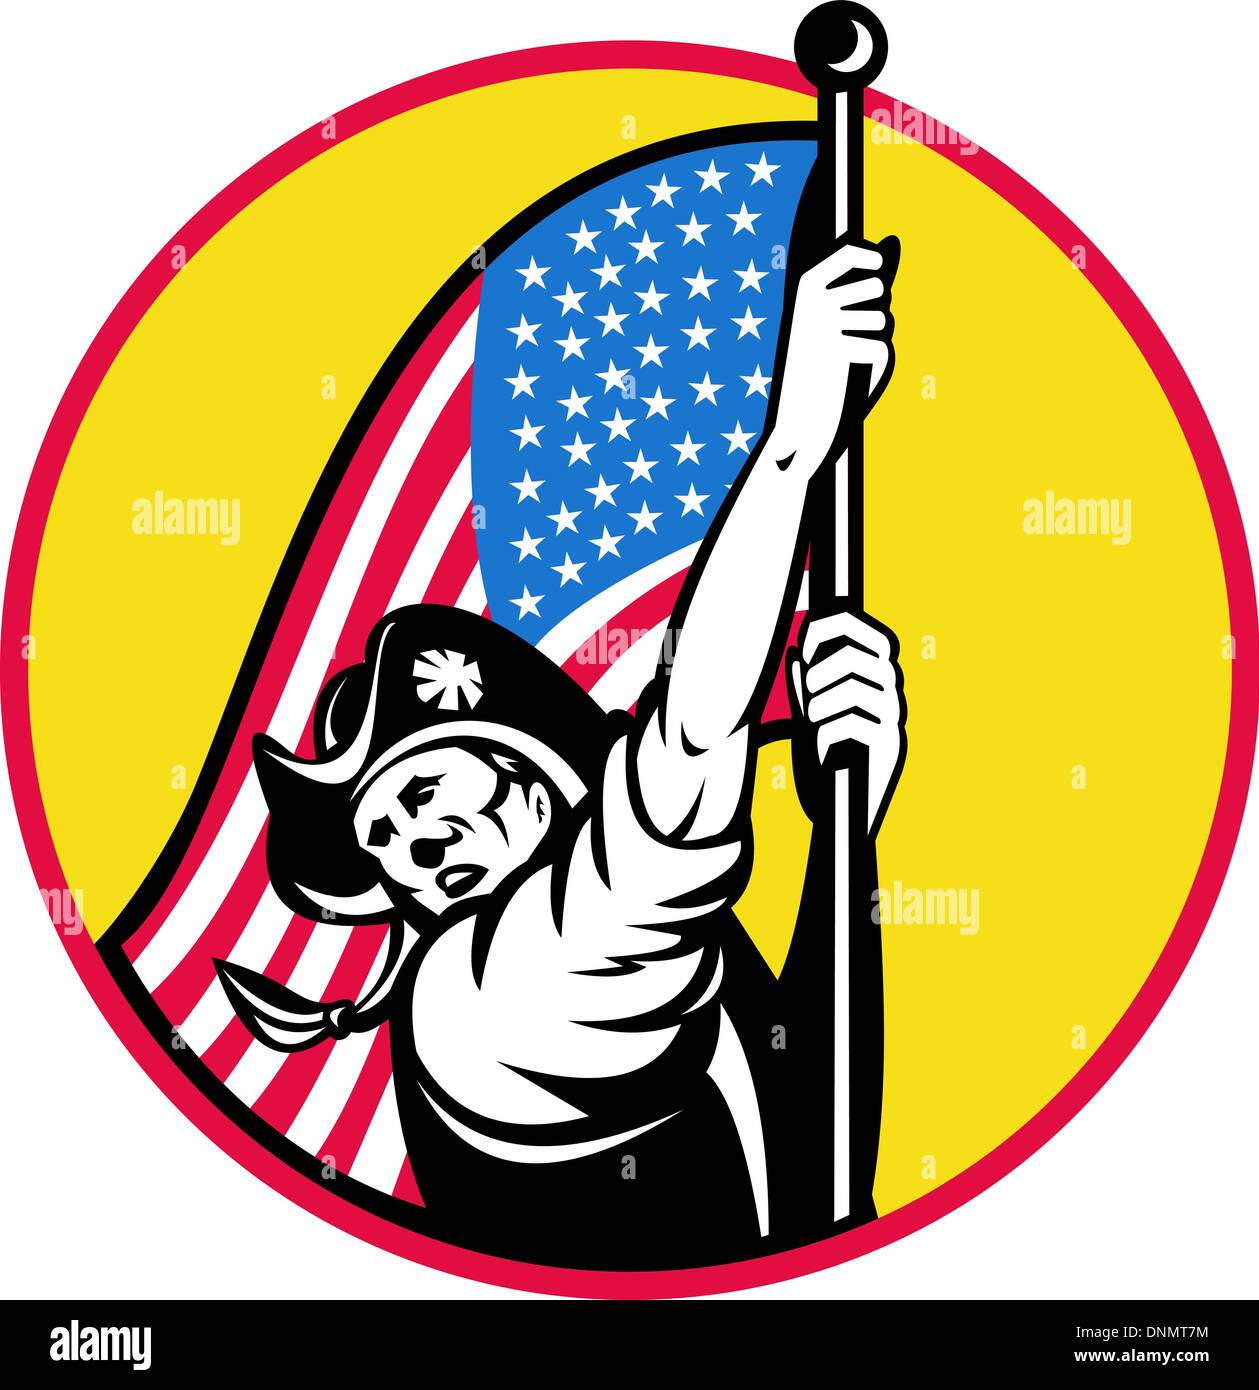 Illustration d'un soldat de la révolution américaine avec des stars and stripes flag à côté de définir à l'intérieur du cercle. fait dans le style rétro Illustration de Vecteur